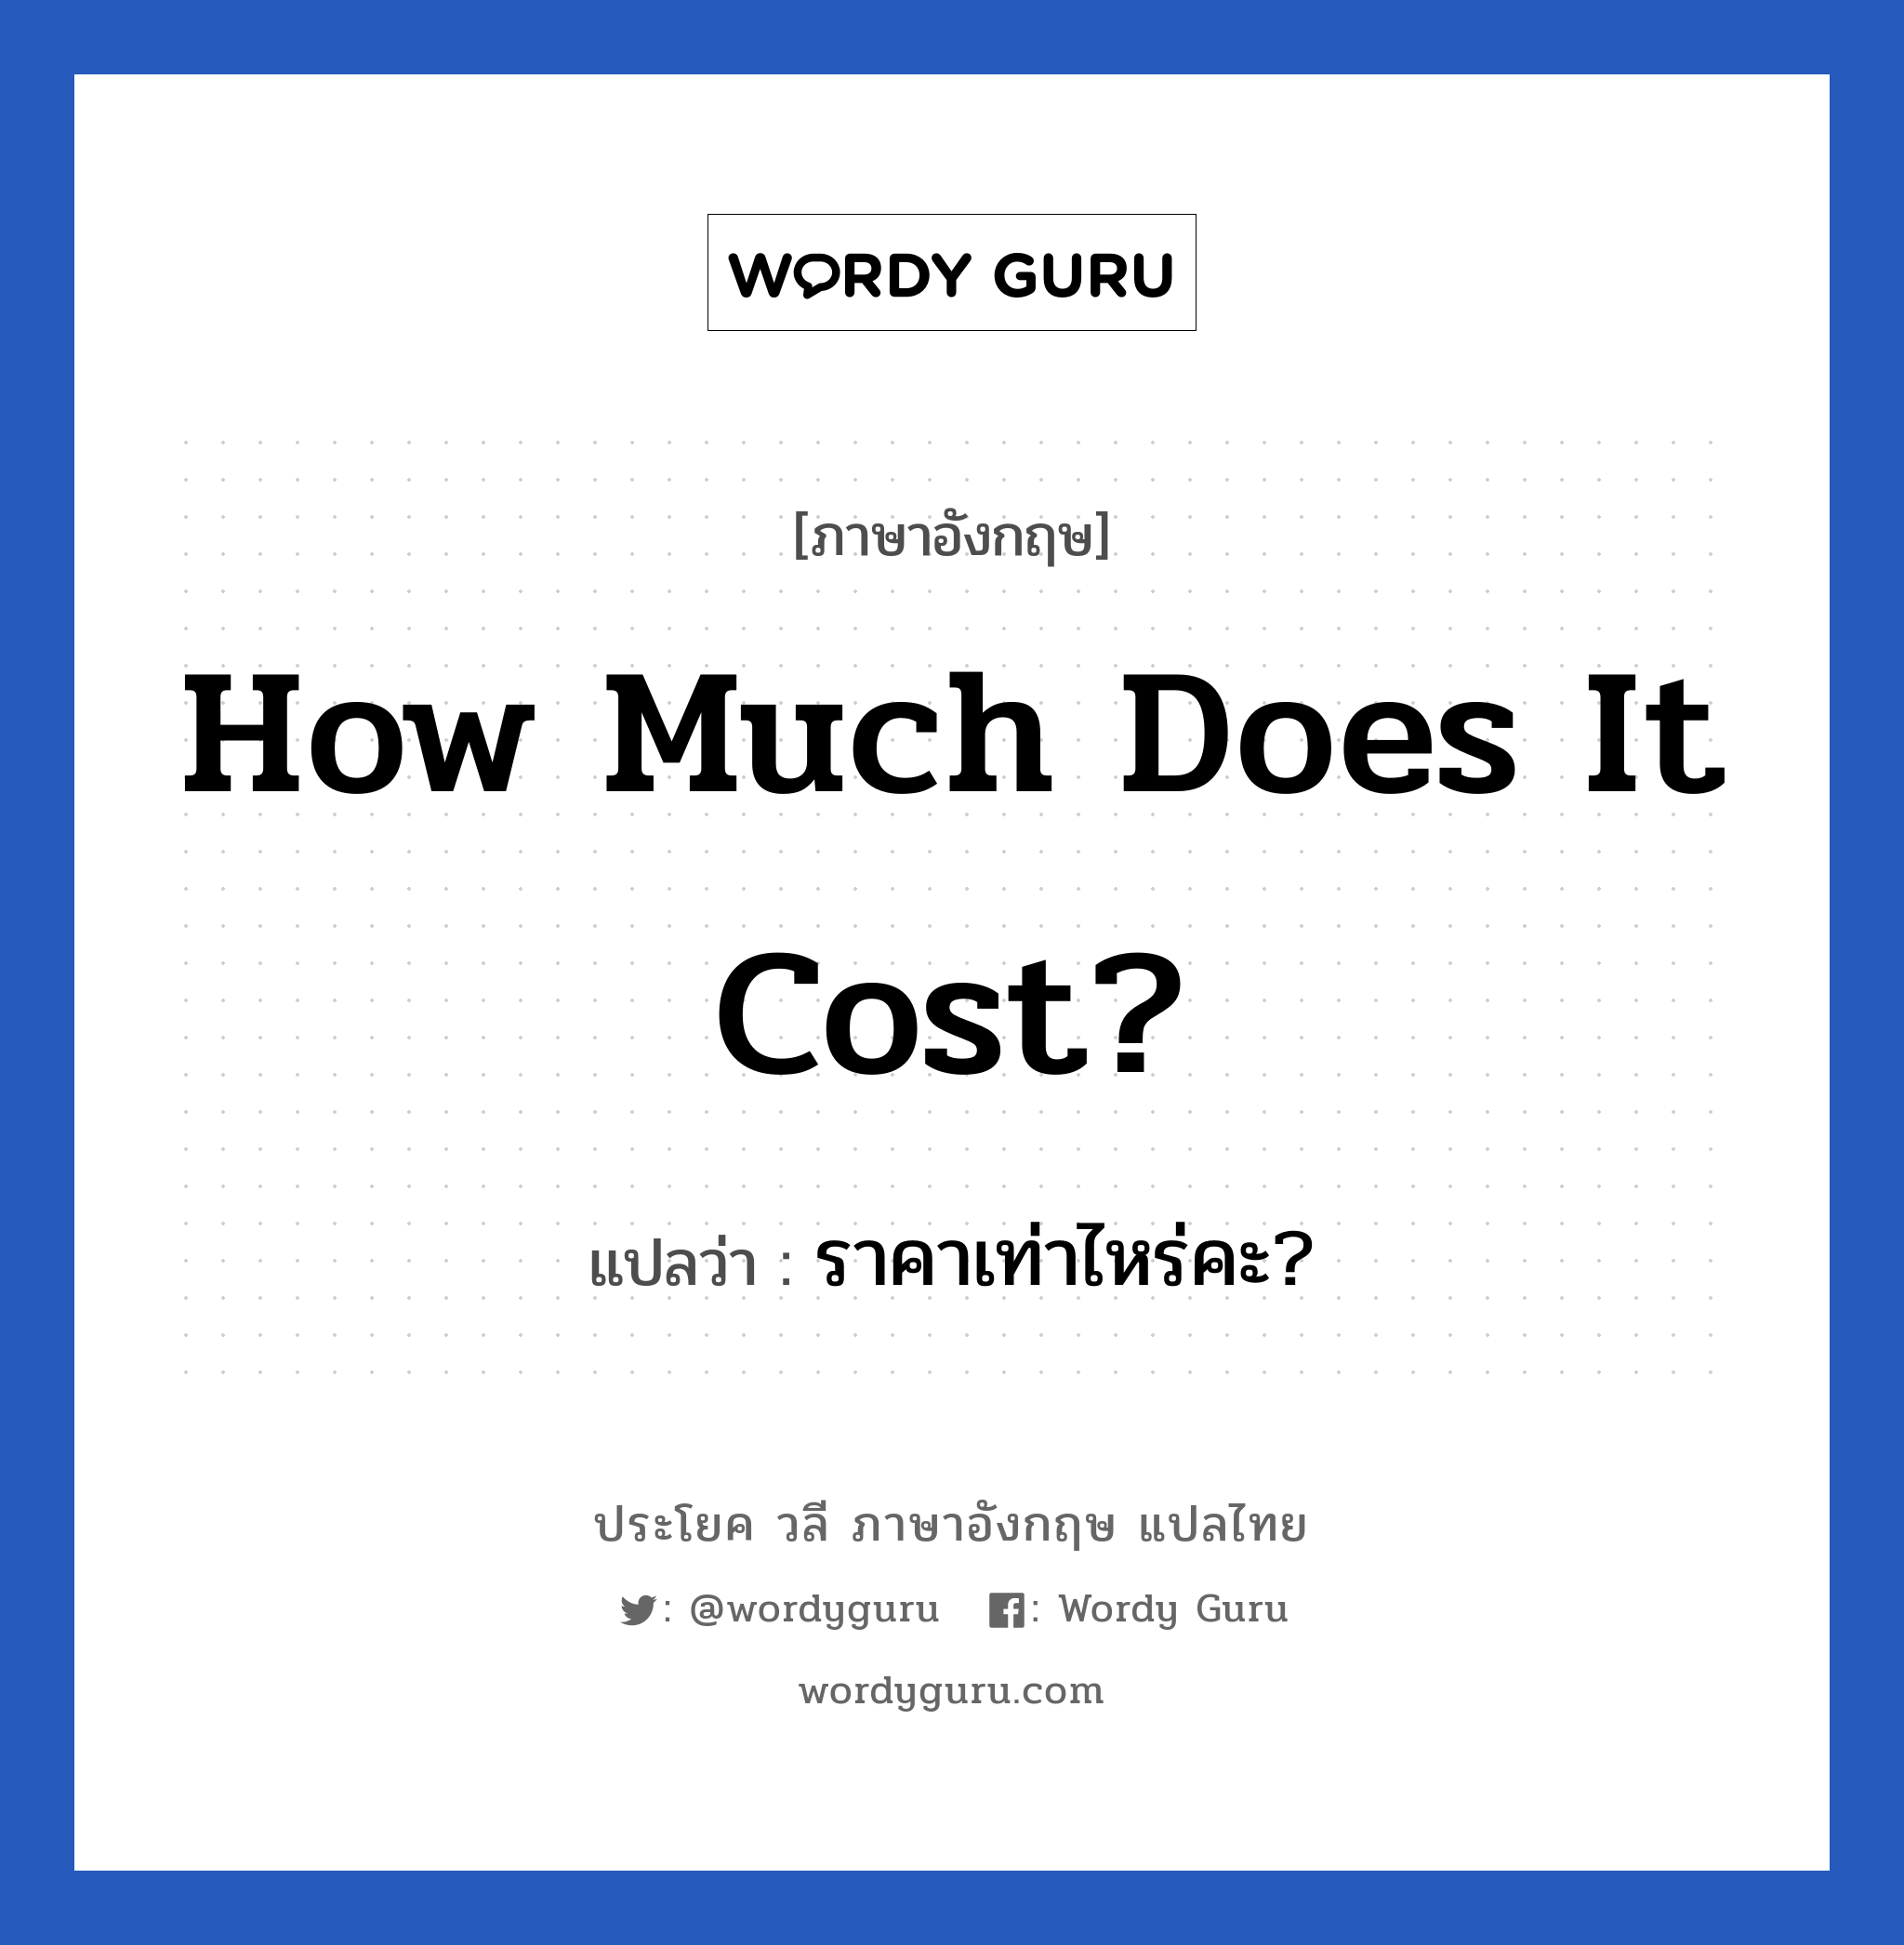 ราคาเท่าไหร่คะ? ภาษาอังกฤษ?, วลีภาษาอังกฤษ ราคาเท่าไหร่คะ? แปลว่า How much does it cost?